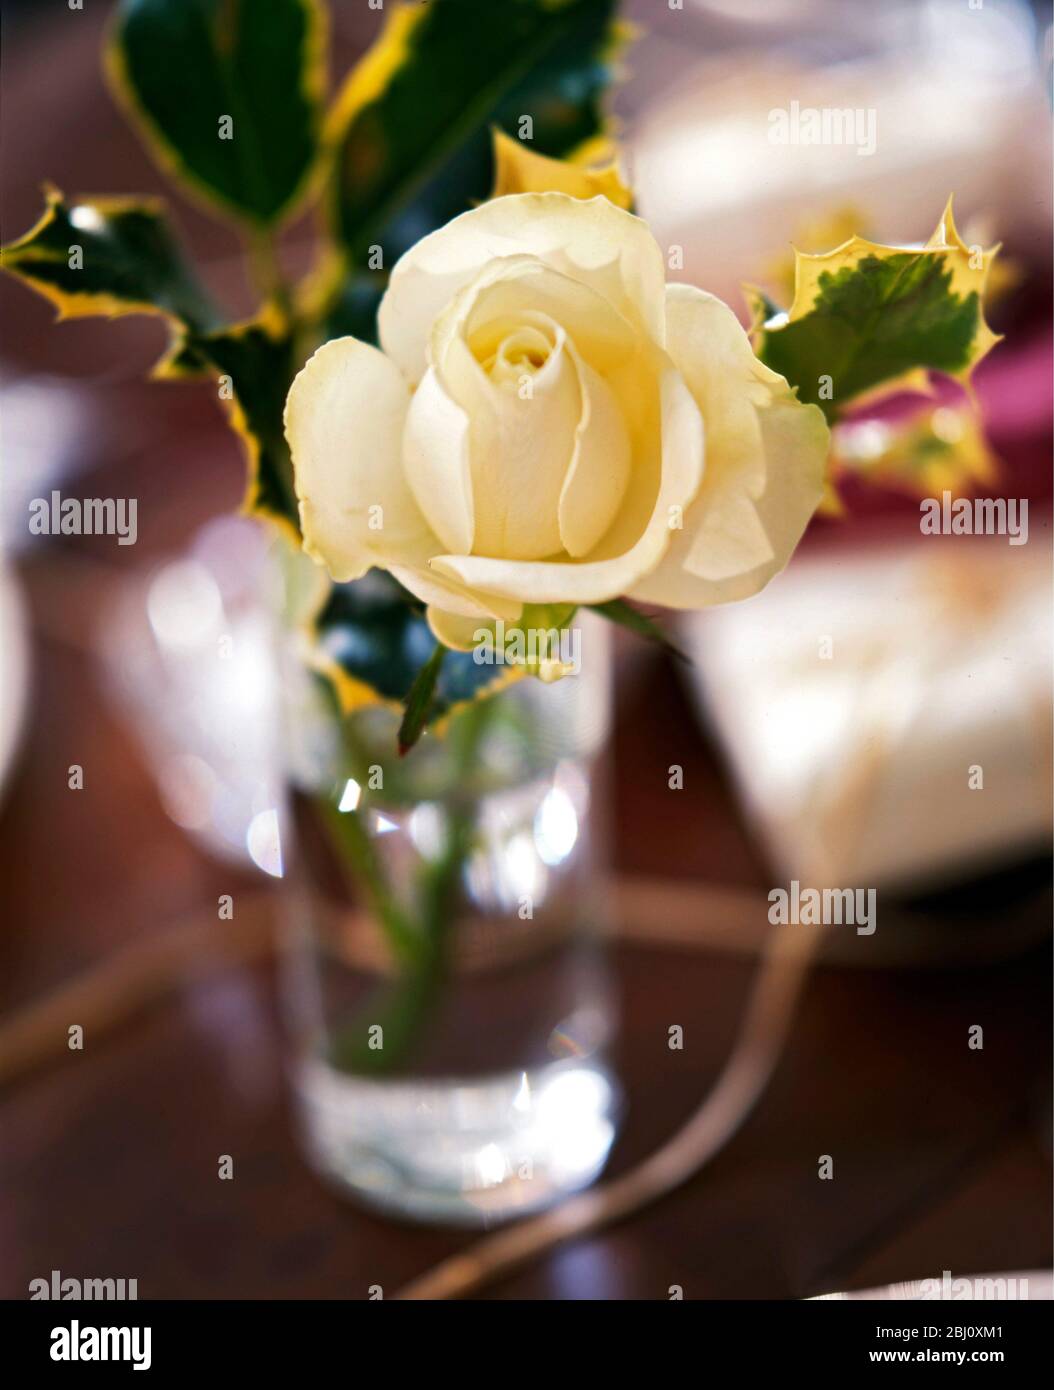 Cremige weiße Rosen mit bunten Stechpaltenblättern in kleinem Glas als weihnachtstisch Dekoration - Stockfoto